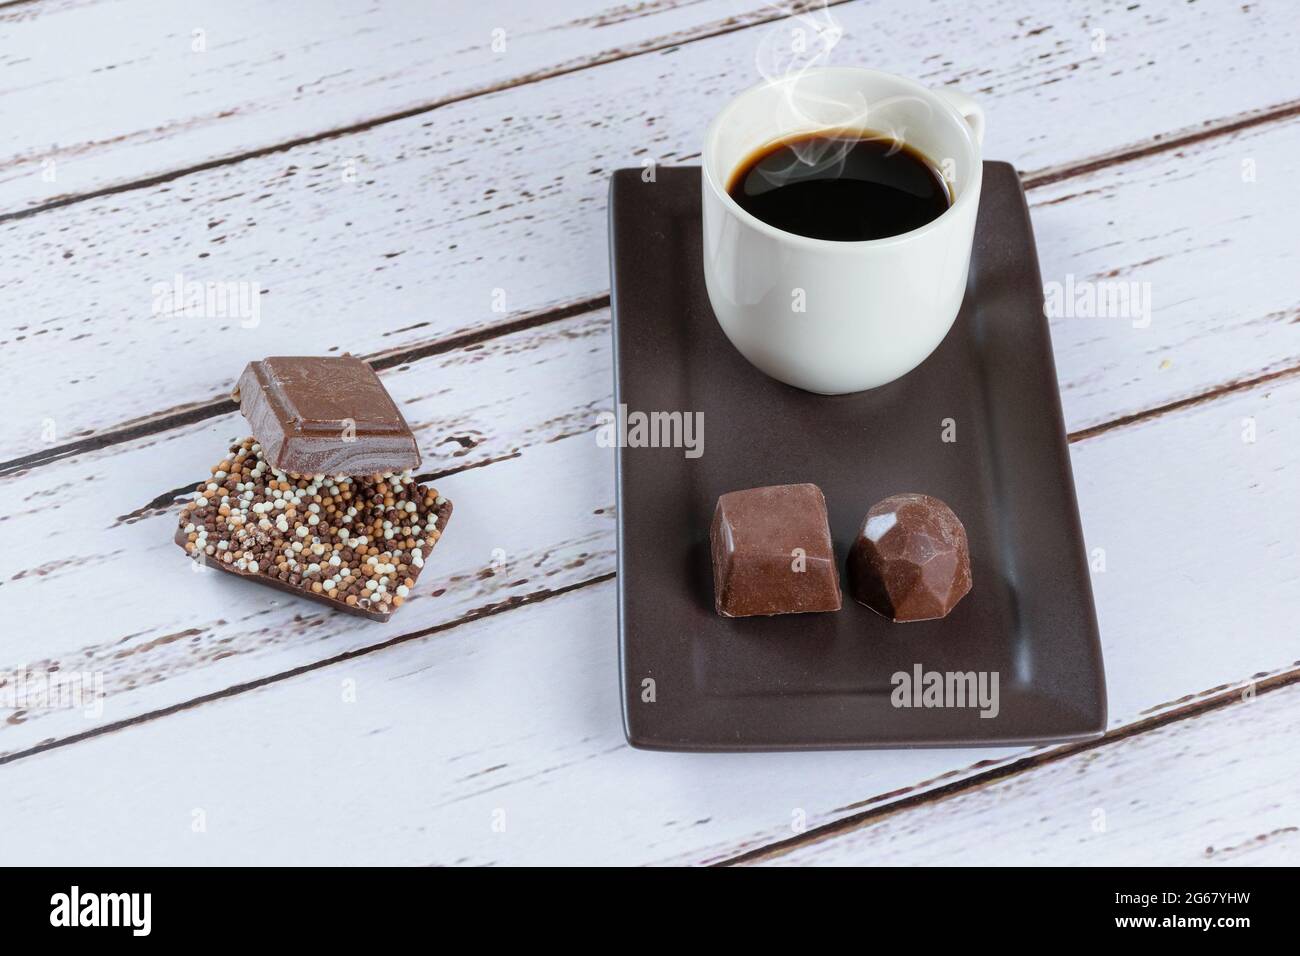 Barrette di cioccolato al latte con spruzzi, accanto a una tazza di caffè e caramelle di cioccolato fondente. Foto Stock